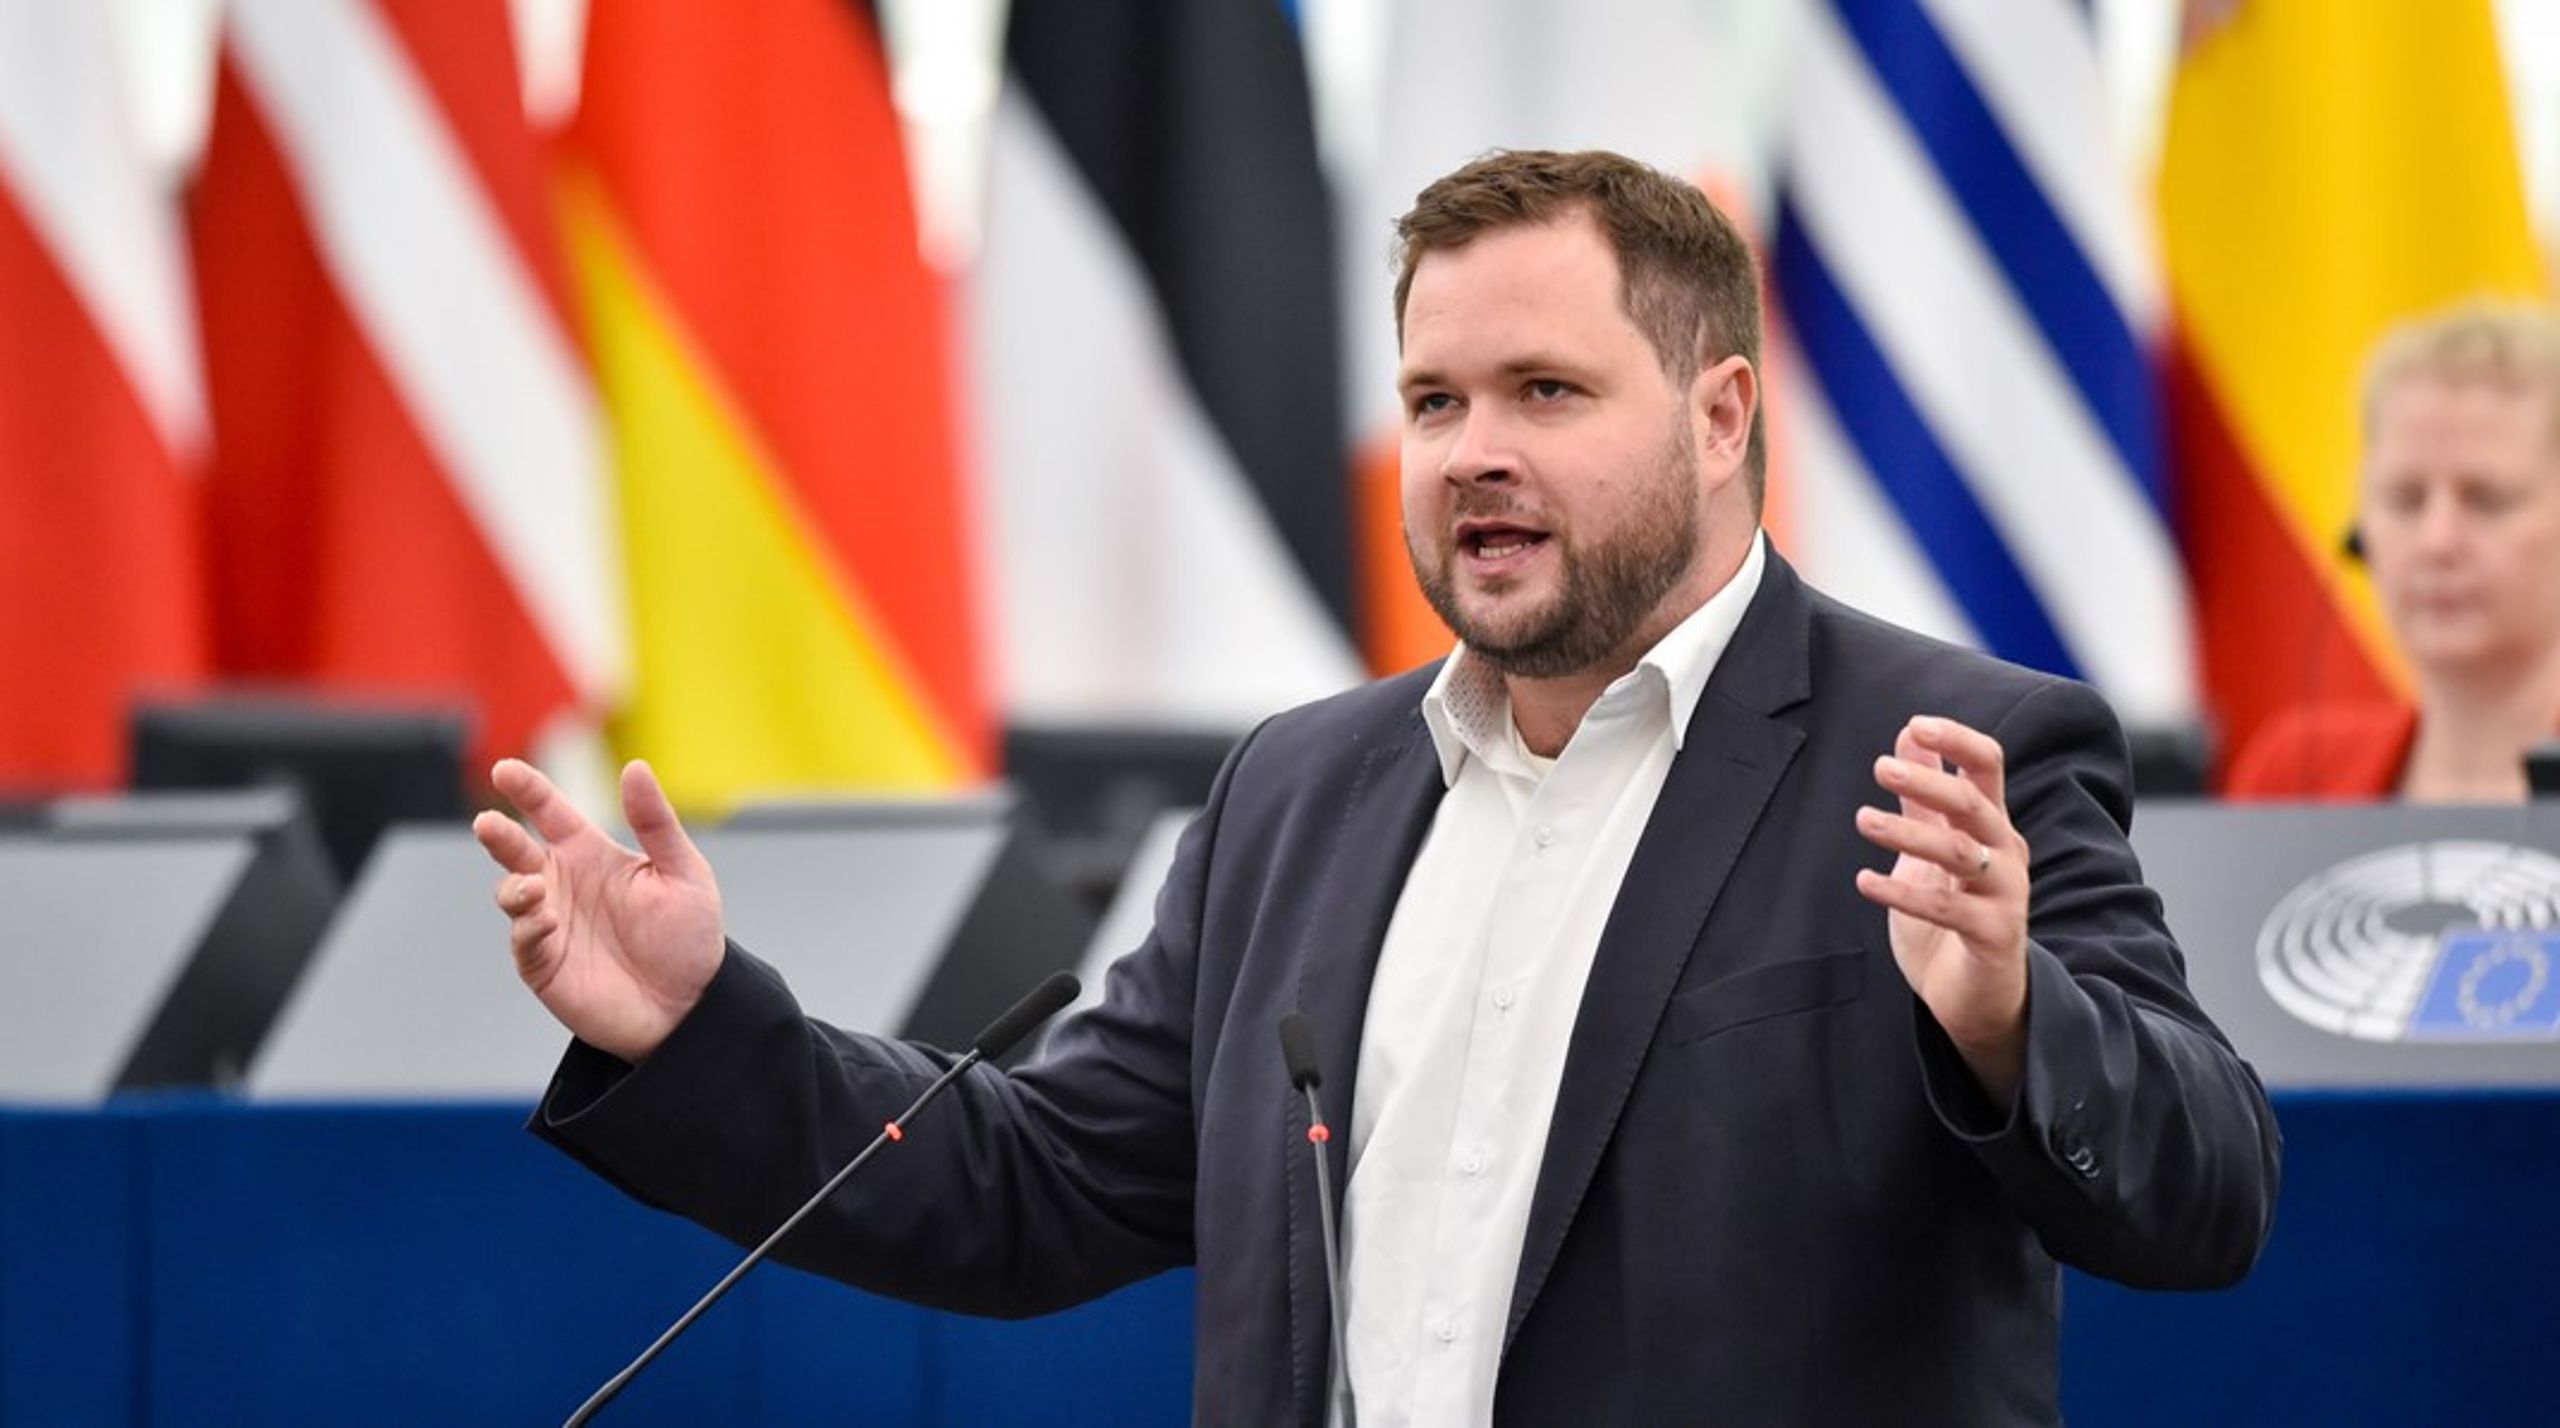 Anders Vistisen er blevet udpeget som talerør for sin nationalkonservative højrefløjsgruppe i Europa-Parlamentet.